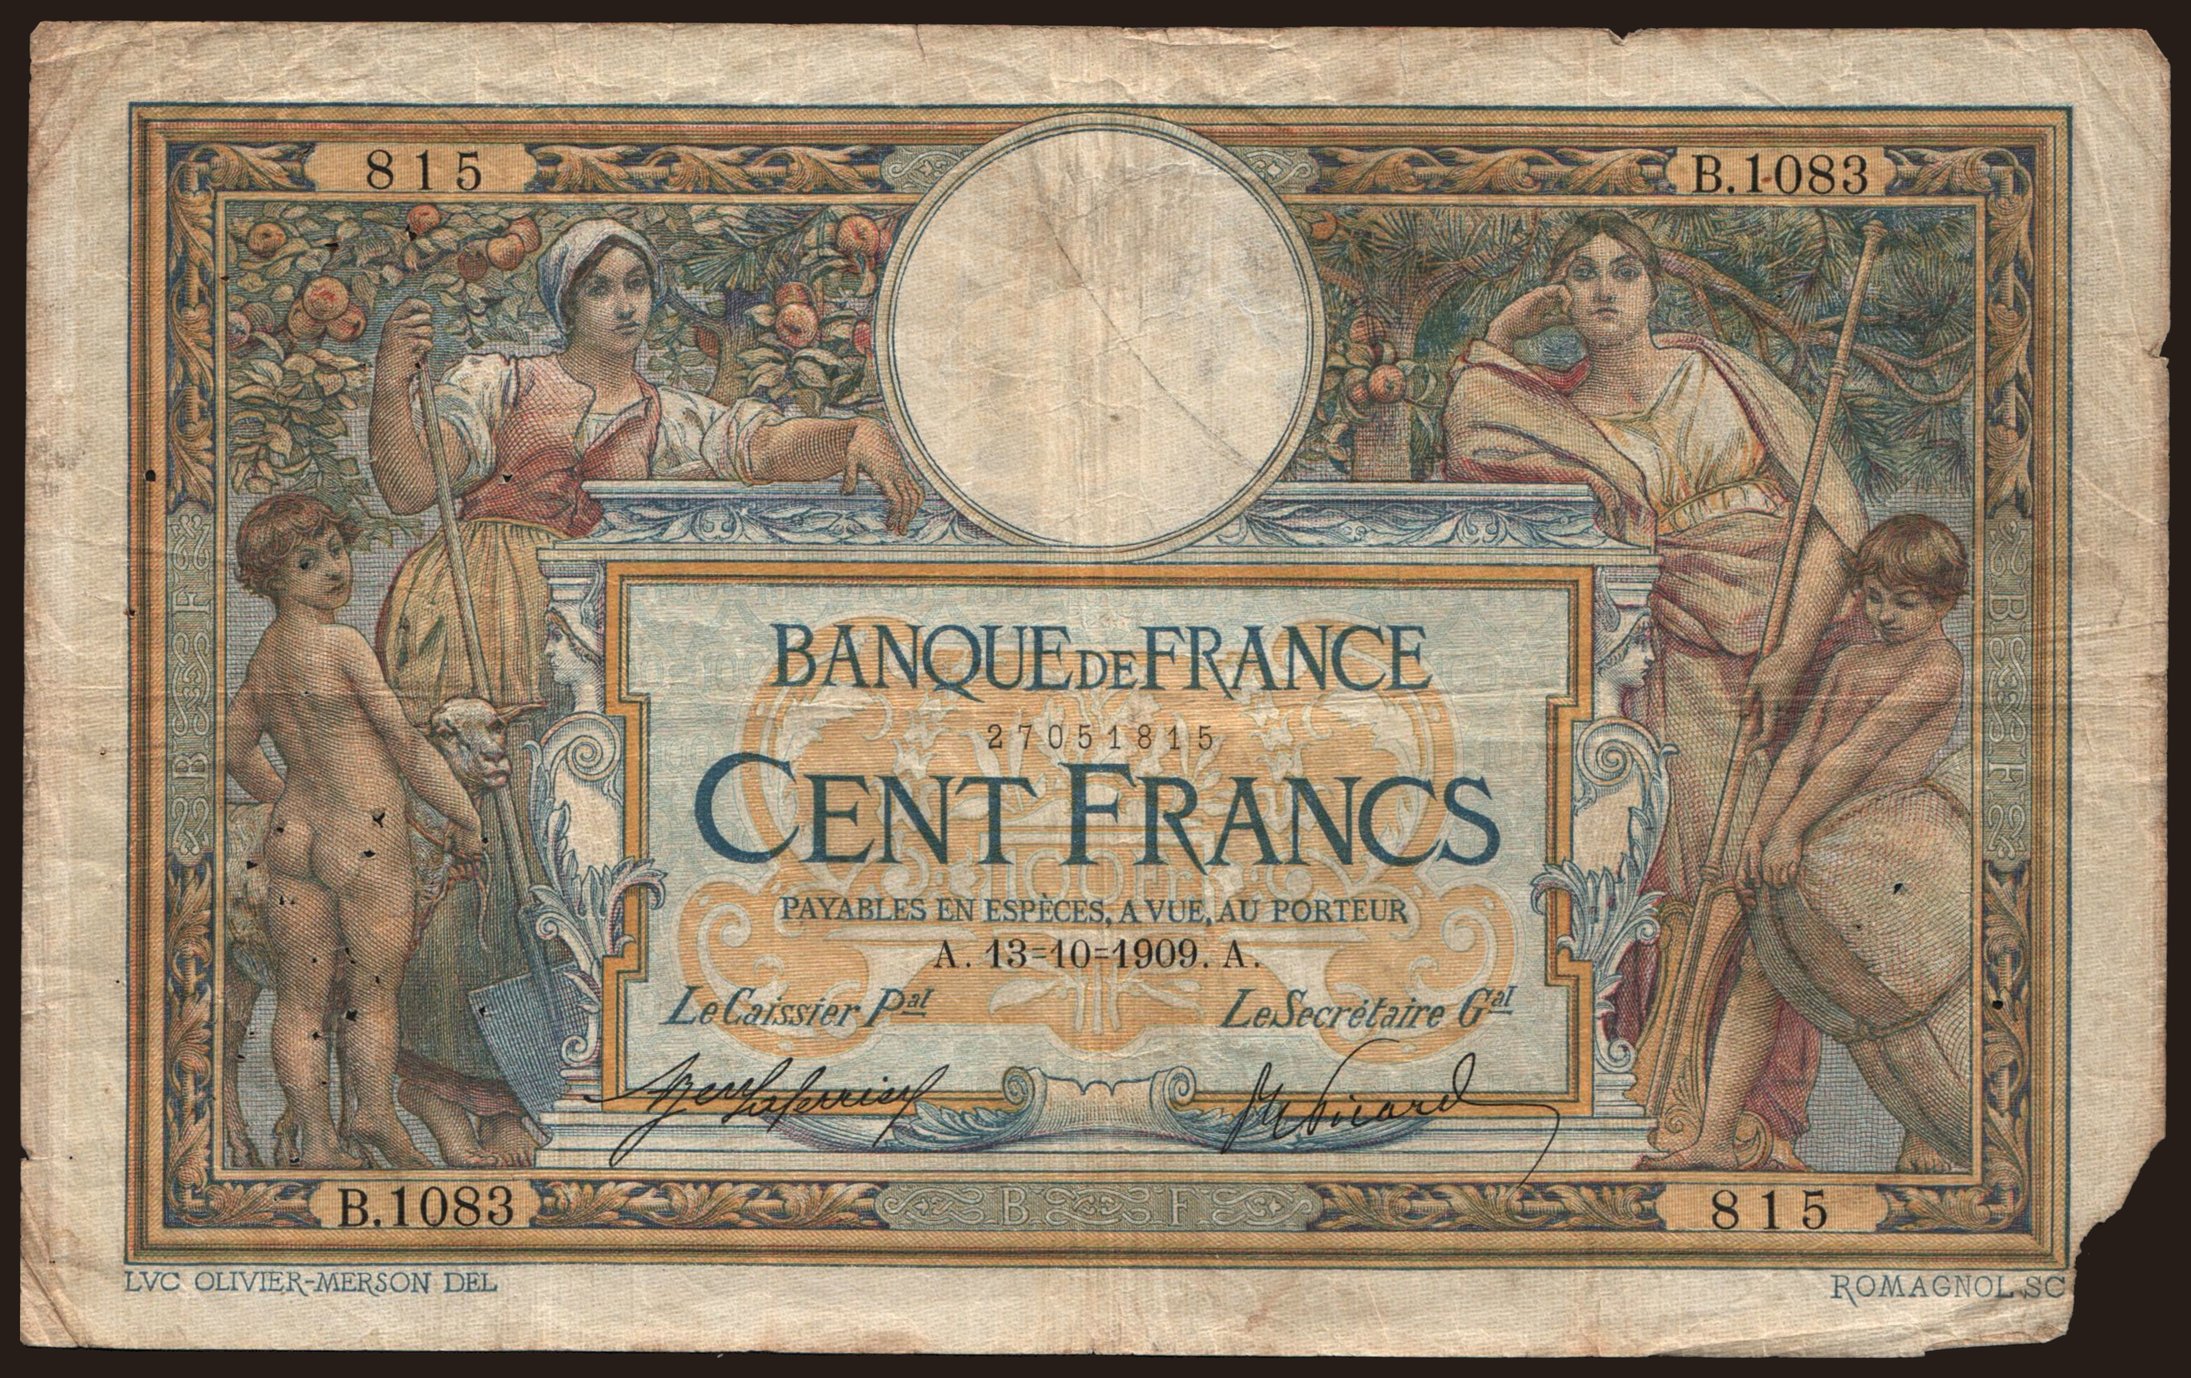 100 francs, 1909